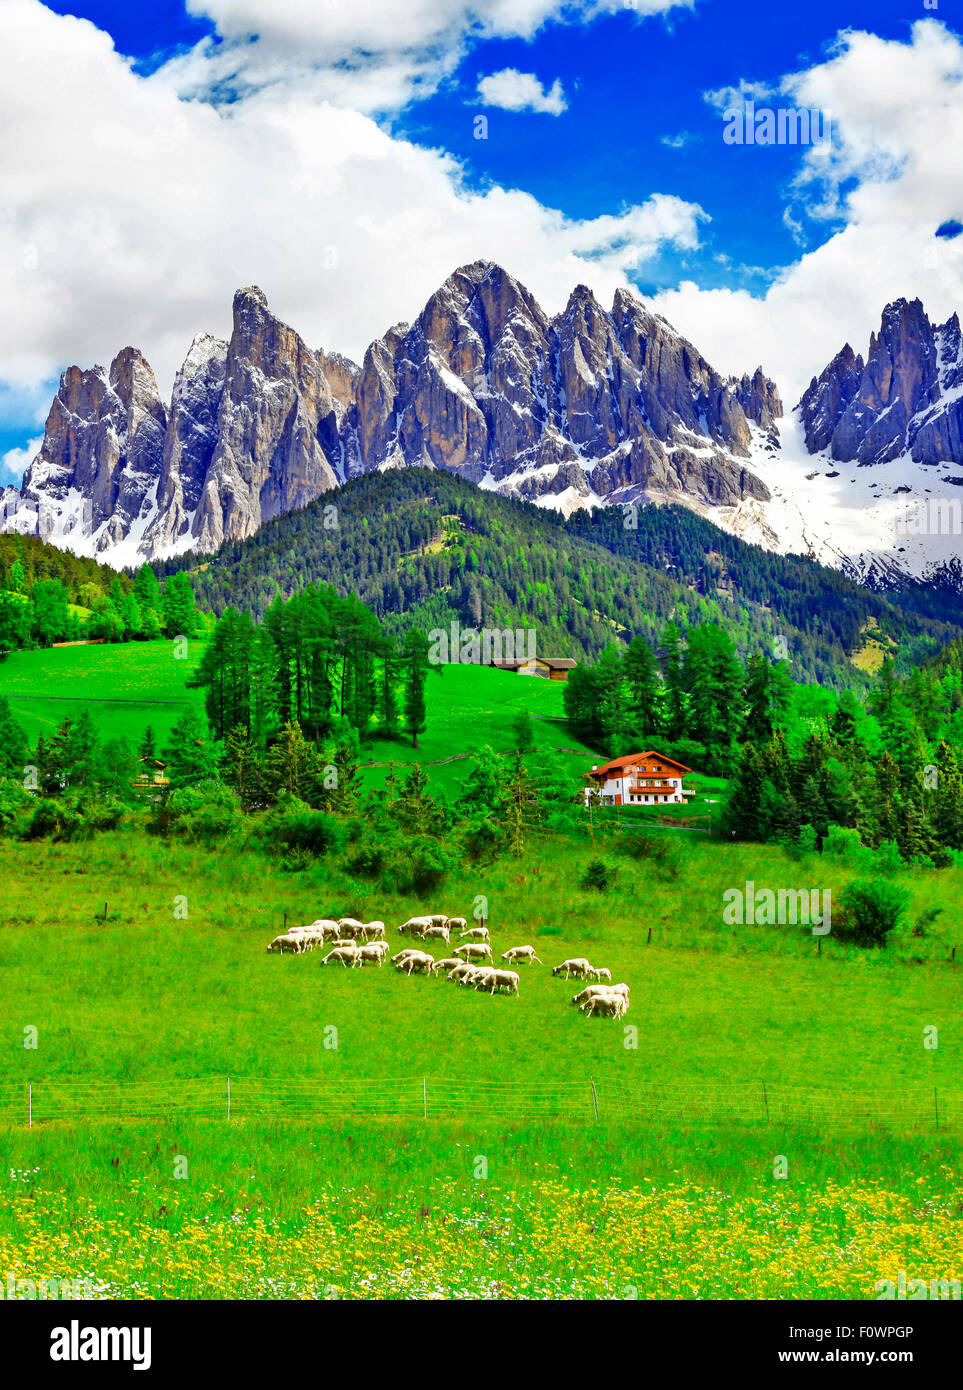 La nature incroyable de montagnes des Dolomites,vue panoramique,Italie Banque D'Images